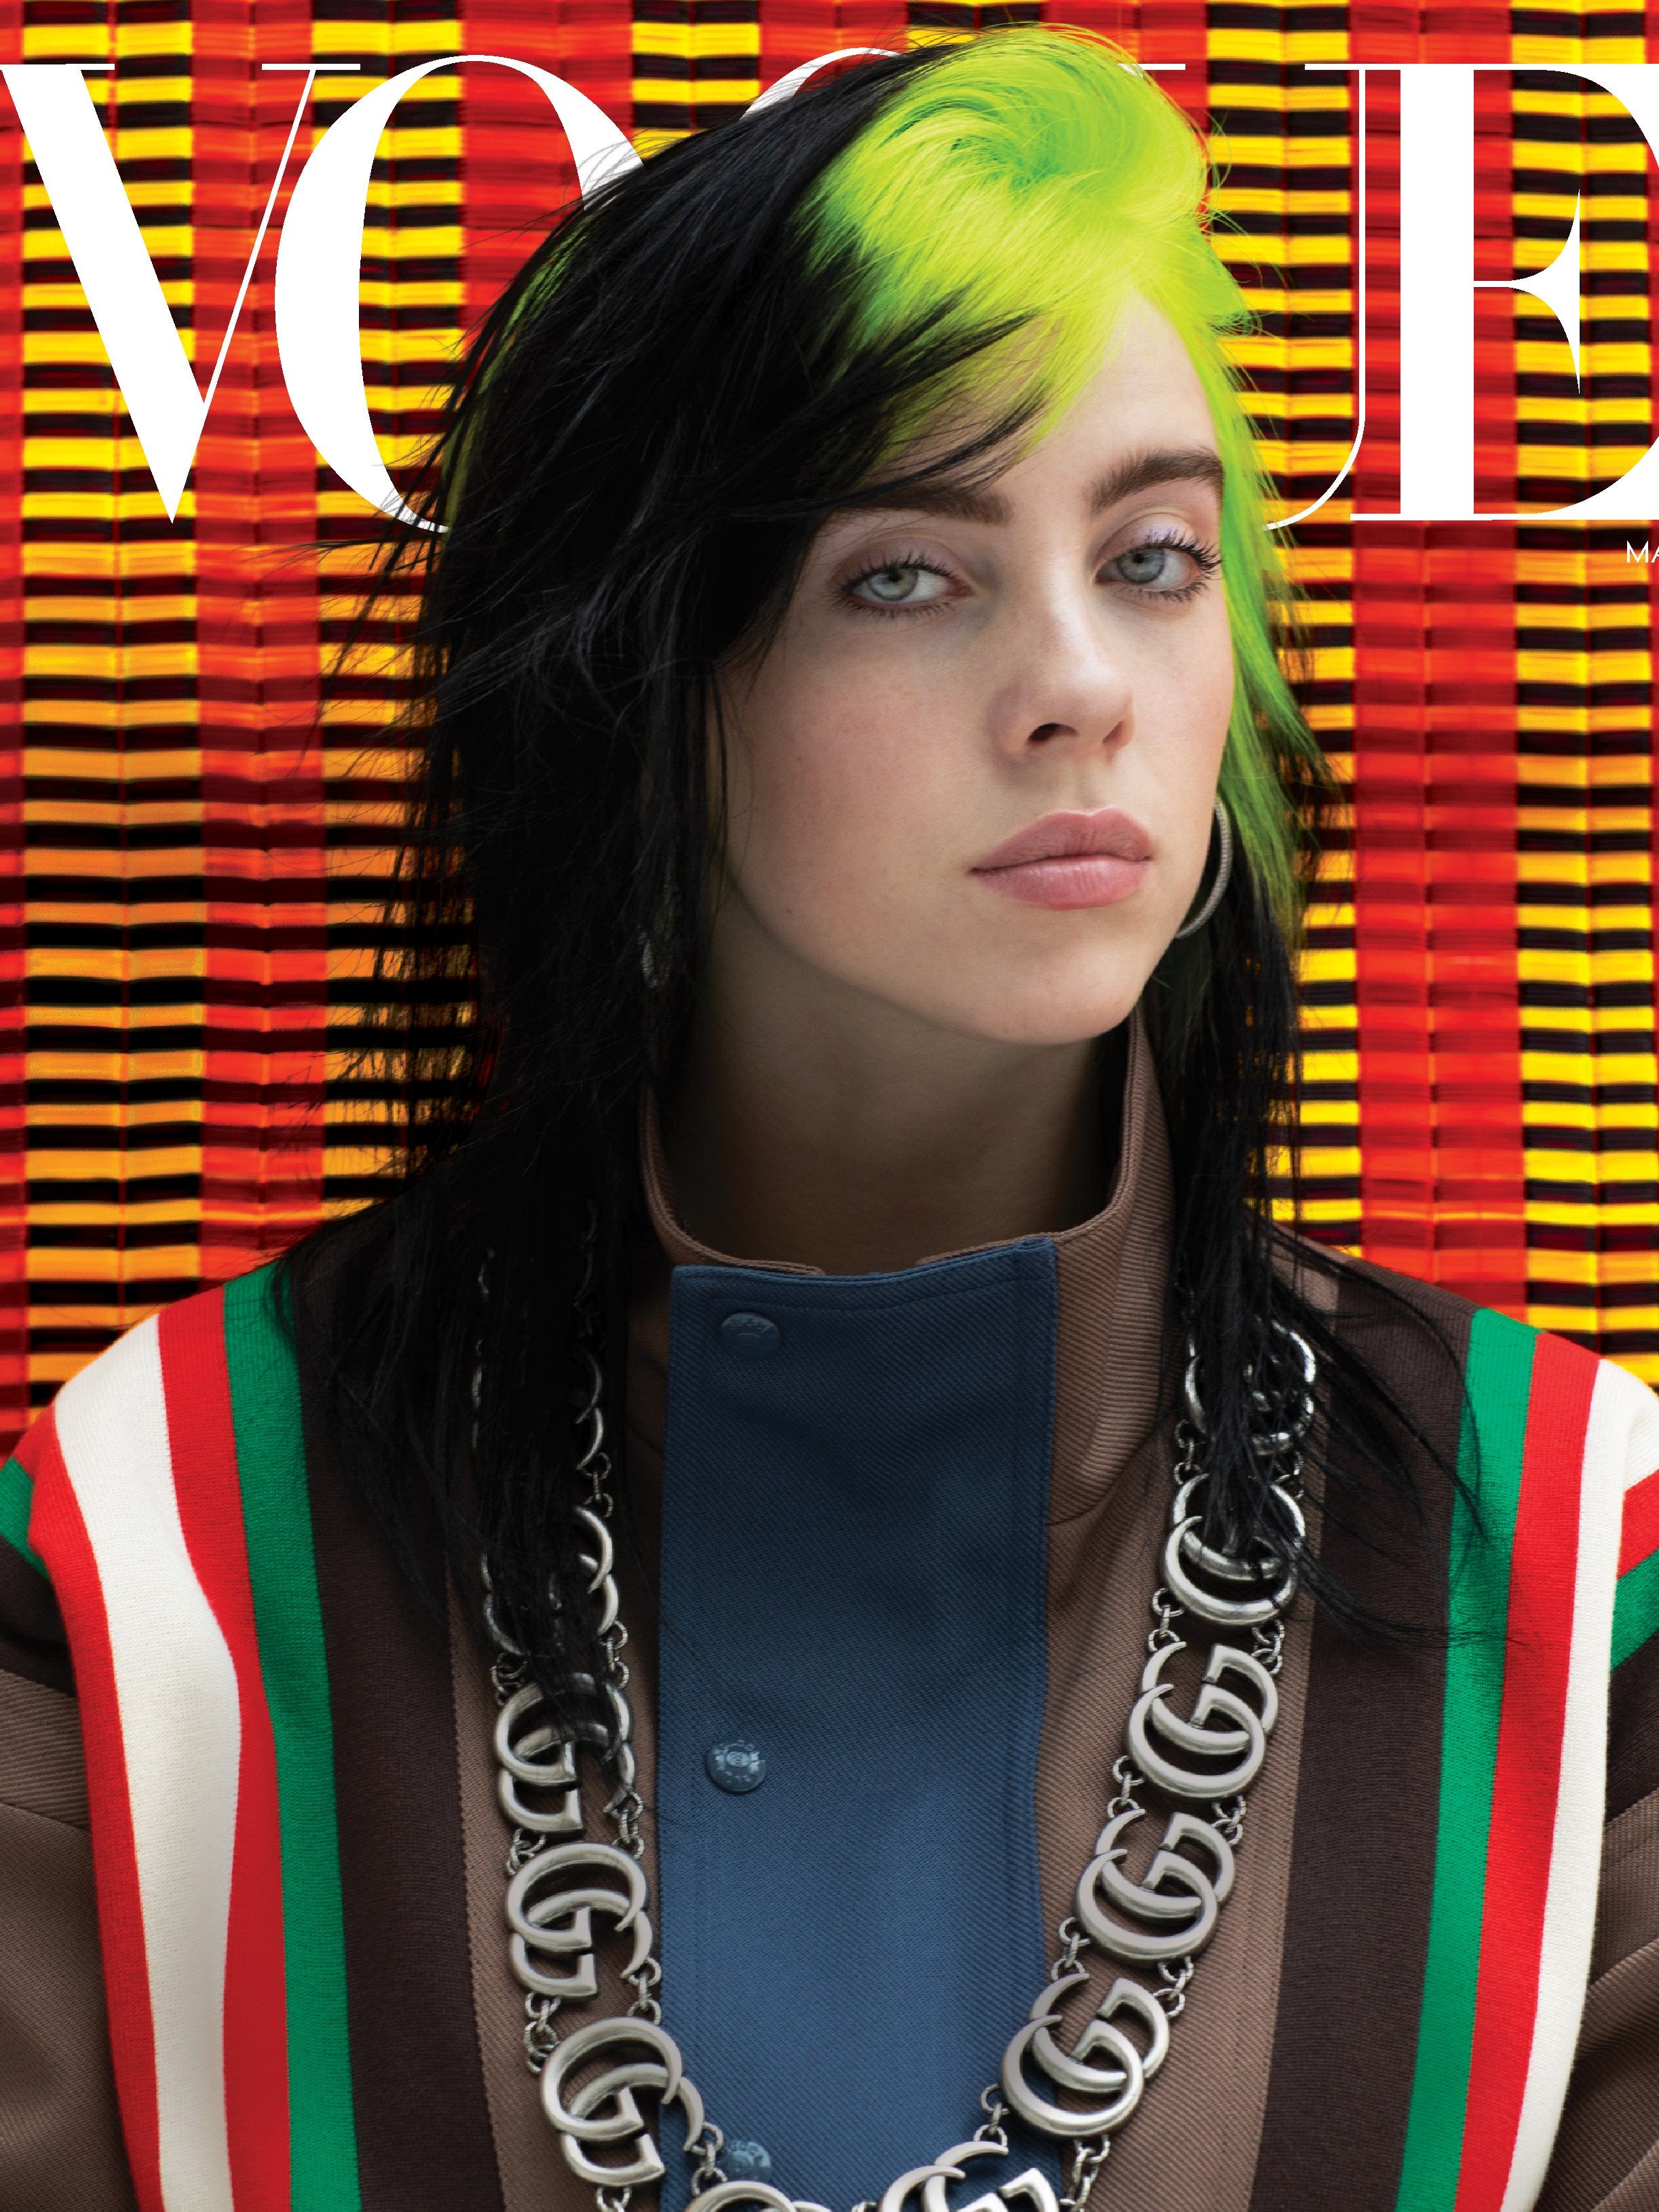 Billie Eilish for British Vogue 2021 Wallpapers